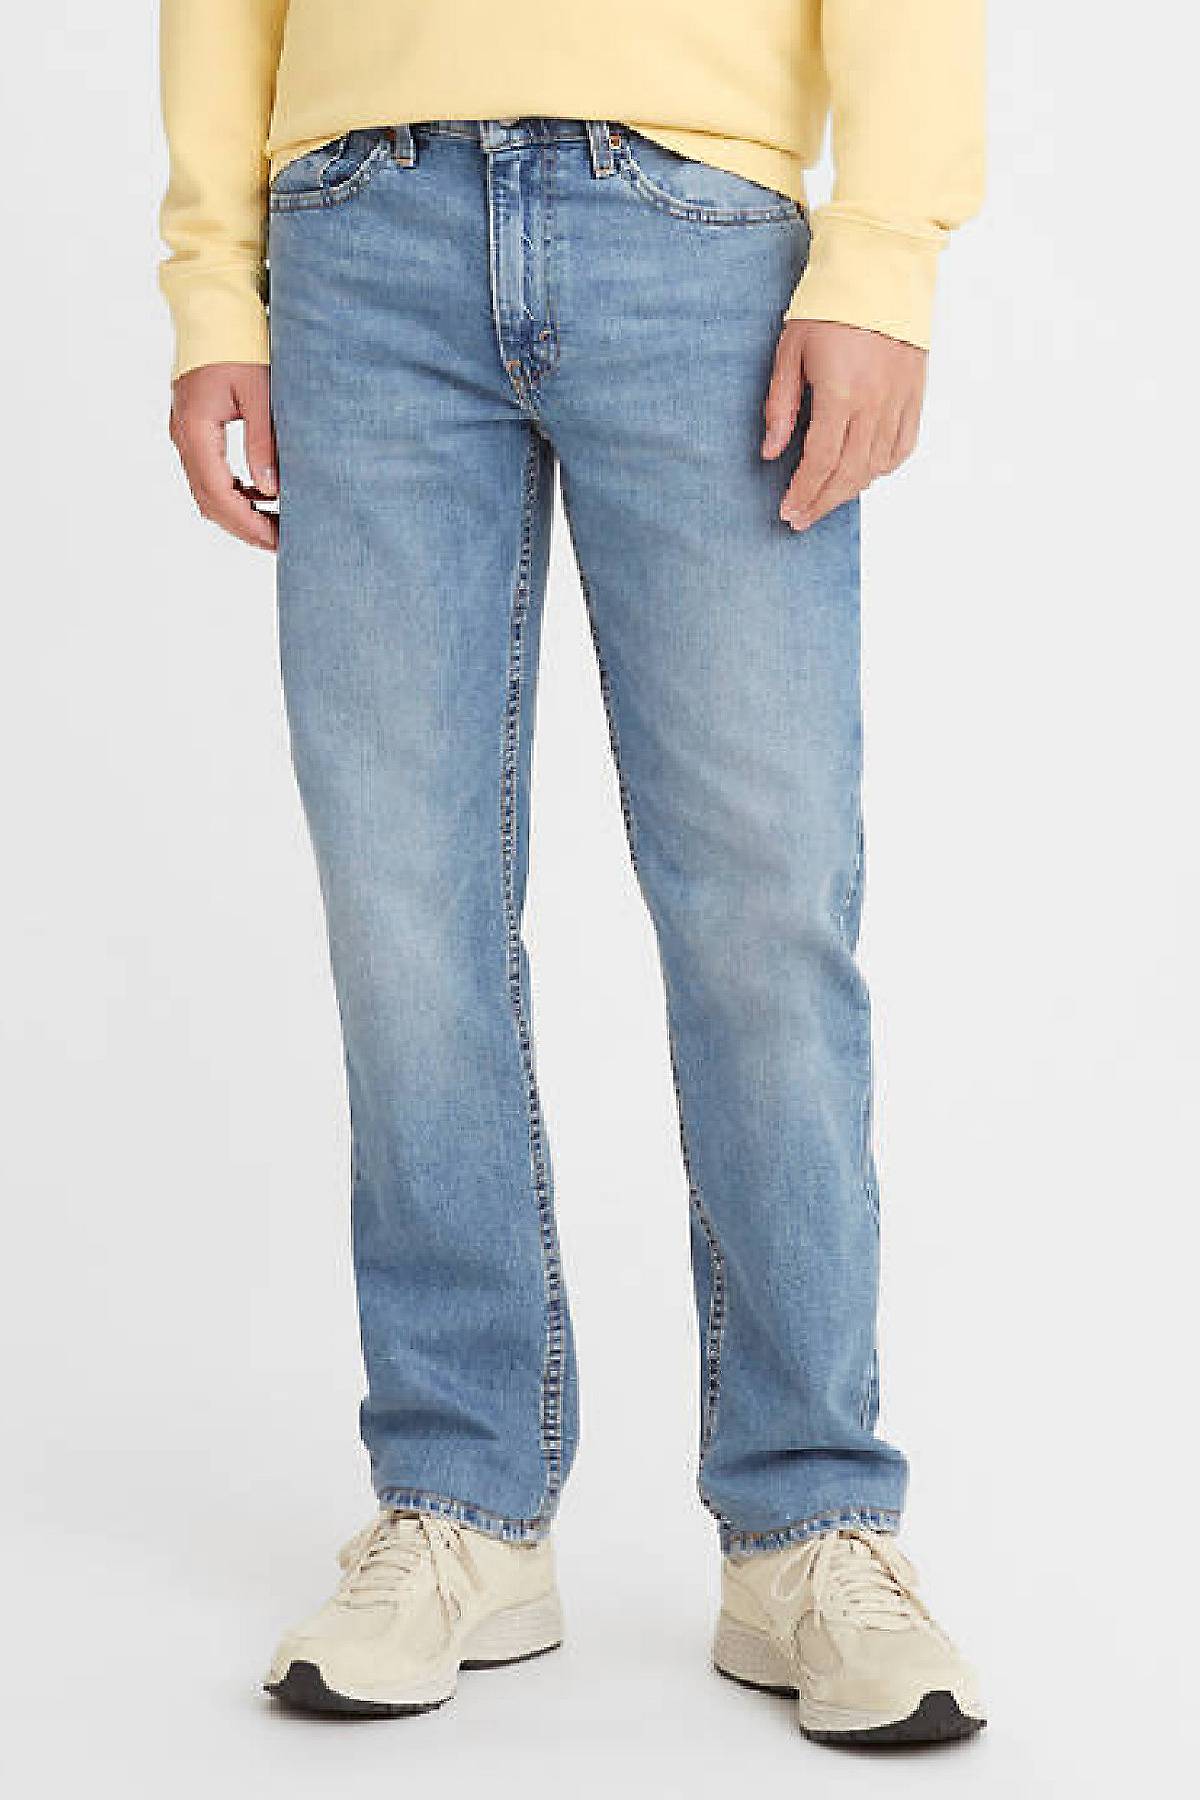 Model wearing 514™ Straight jeans